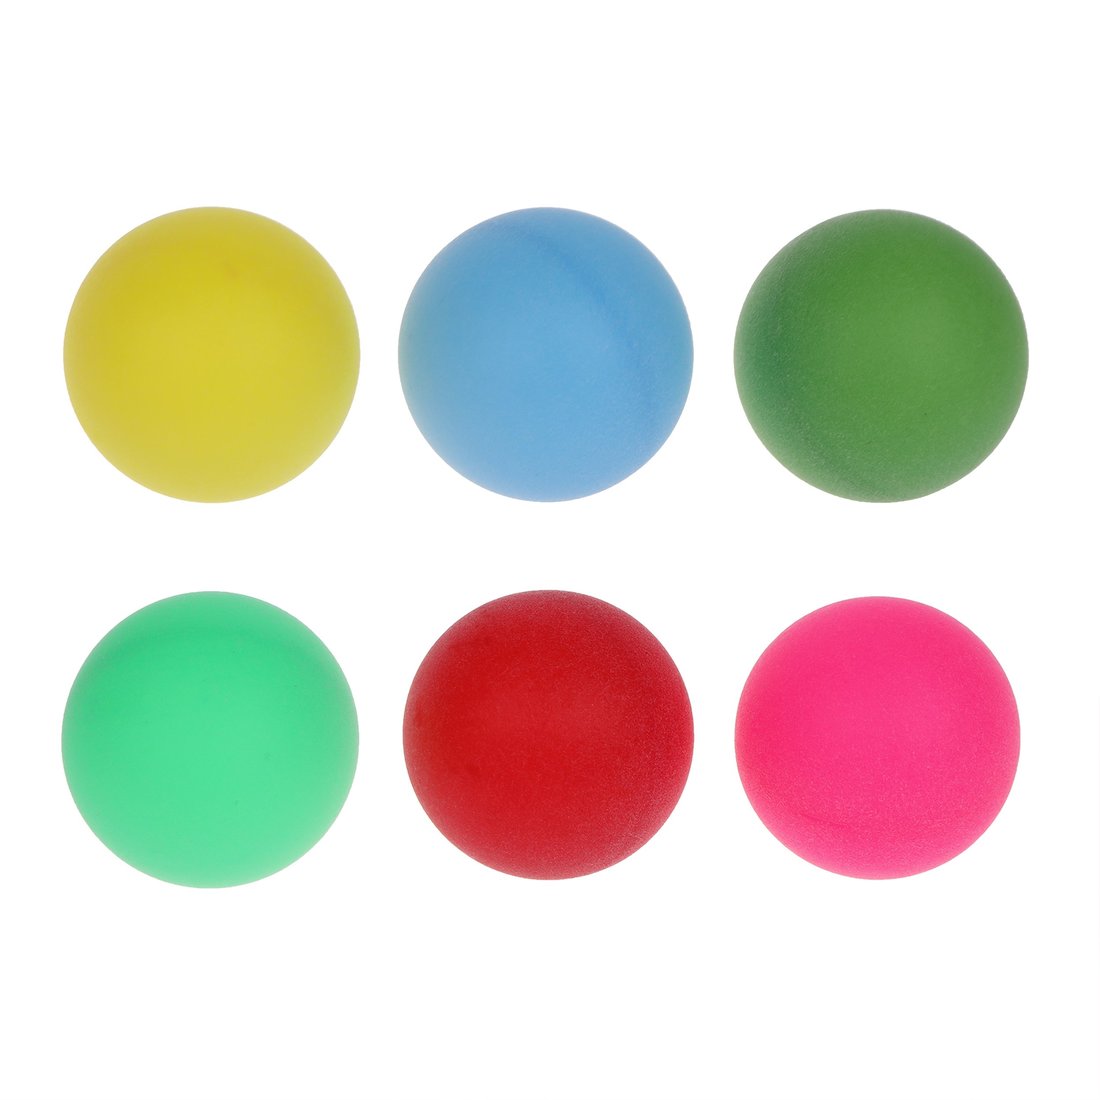 Шарики для настольного тенниса 636179 цветные в наборе 6шт в пакете - Альметьевск 